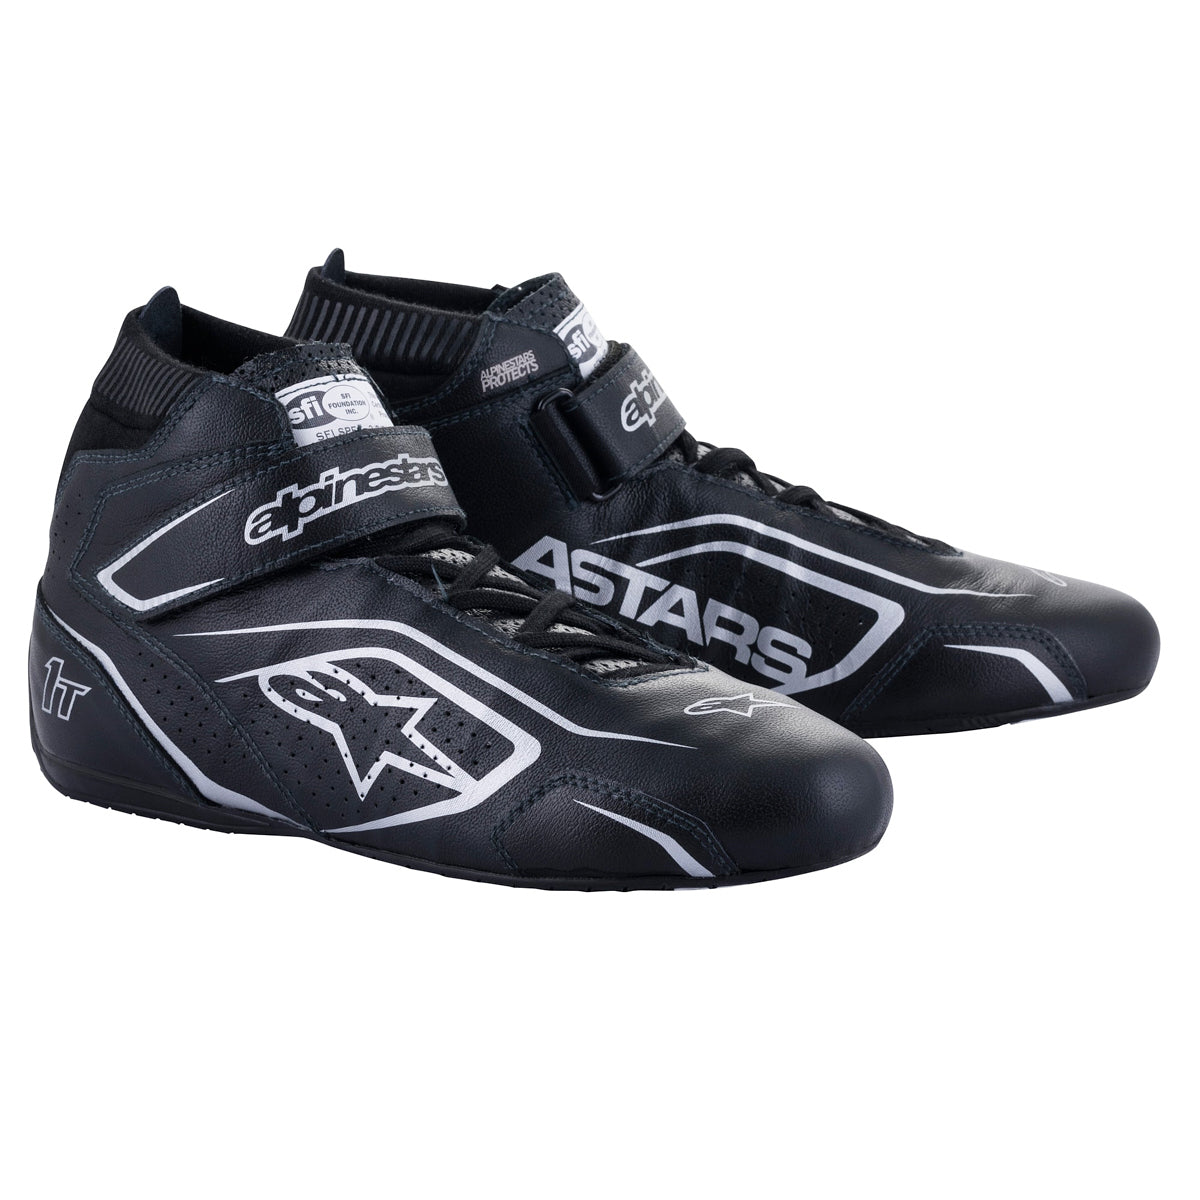 Shoe Tech-1T V3 Black / Silver Size 8